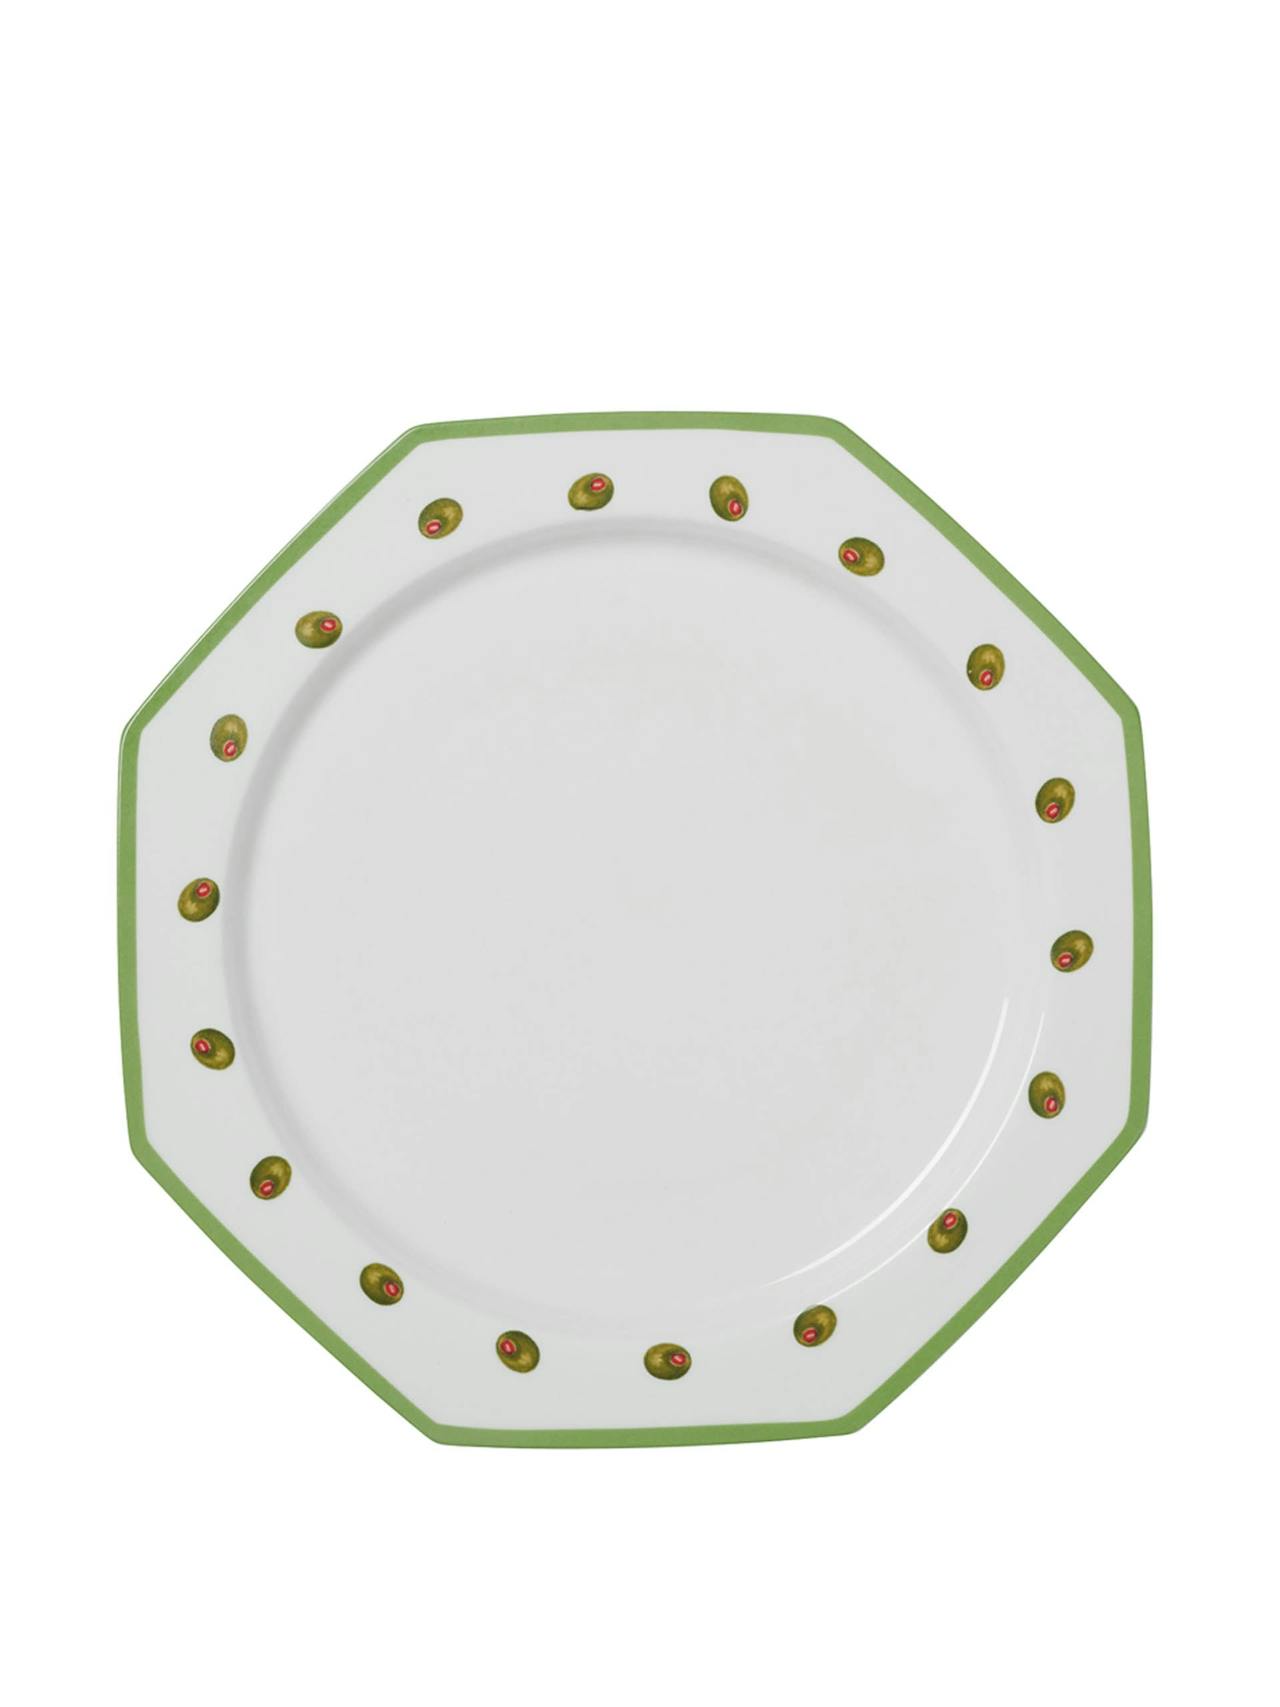 Olive octagonal plate set